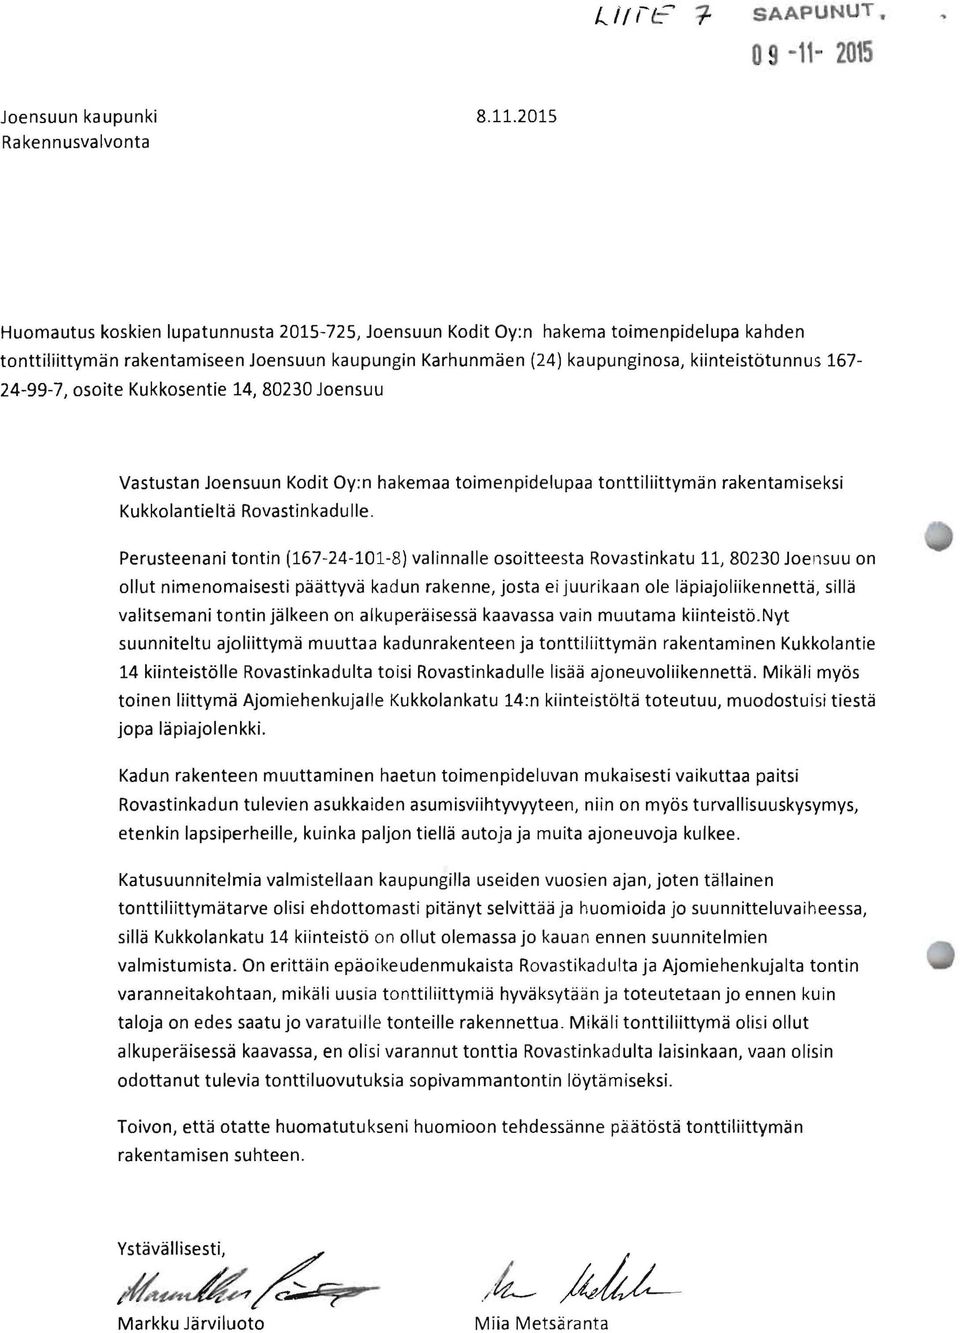 2015 Huomautus koskien lupatunnusta 2015-725, Joensuun Kodit Oy:n hakema toimenpidelupa kahden tonttiliittymän rakentamiseen Joensuun kaupungin Karhunmäen (24) kaupunginosa, kiinteistötunnus 167